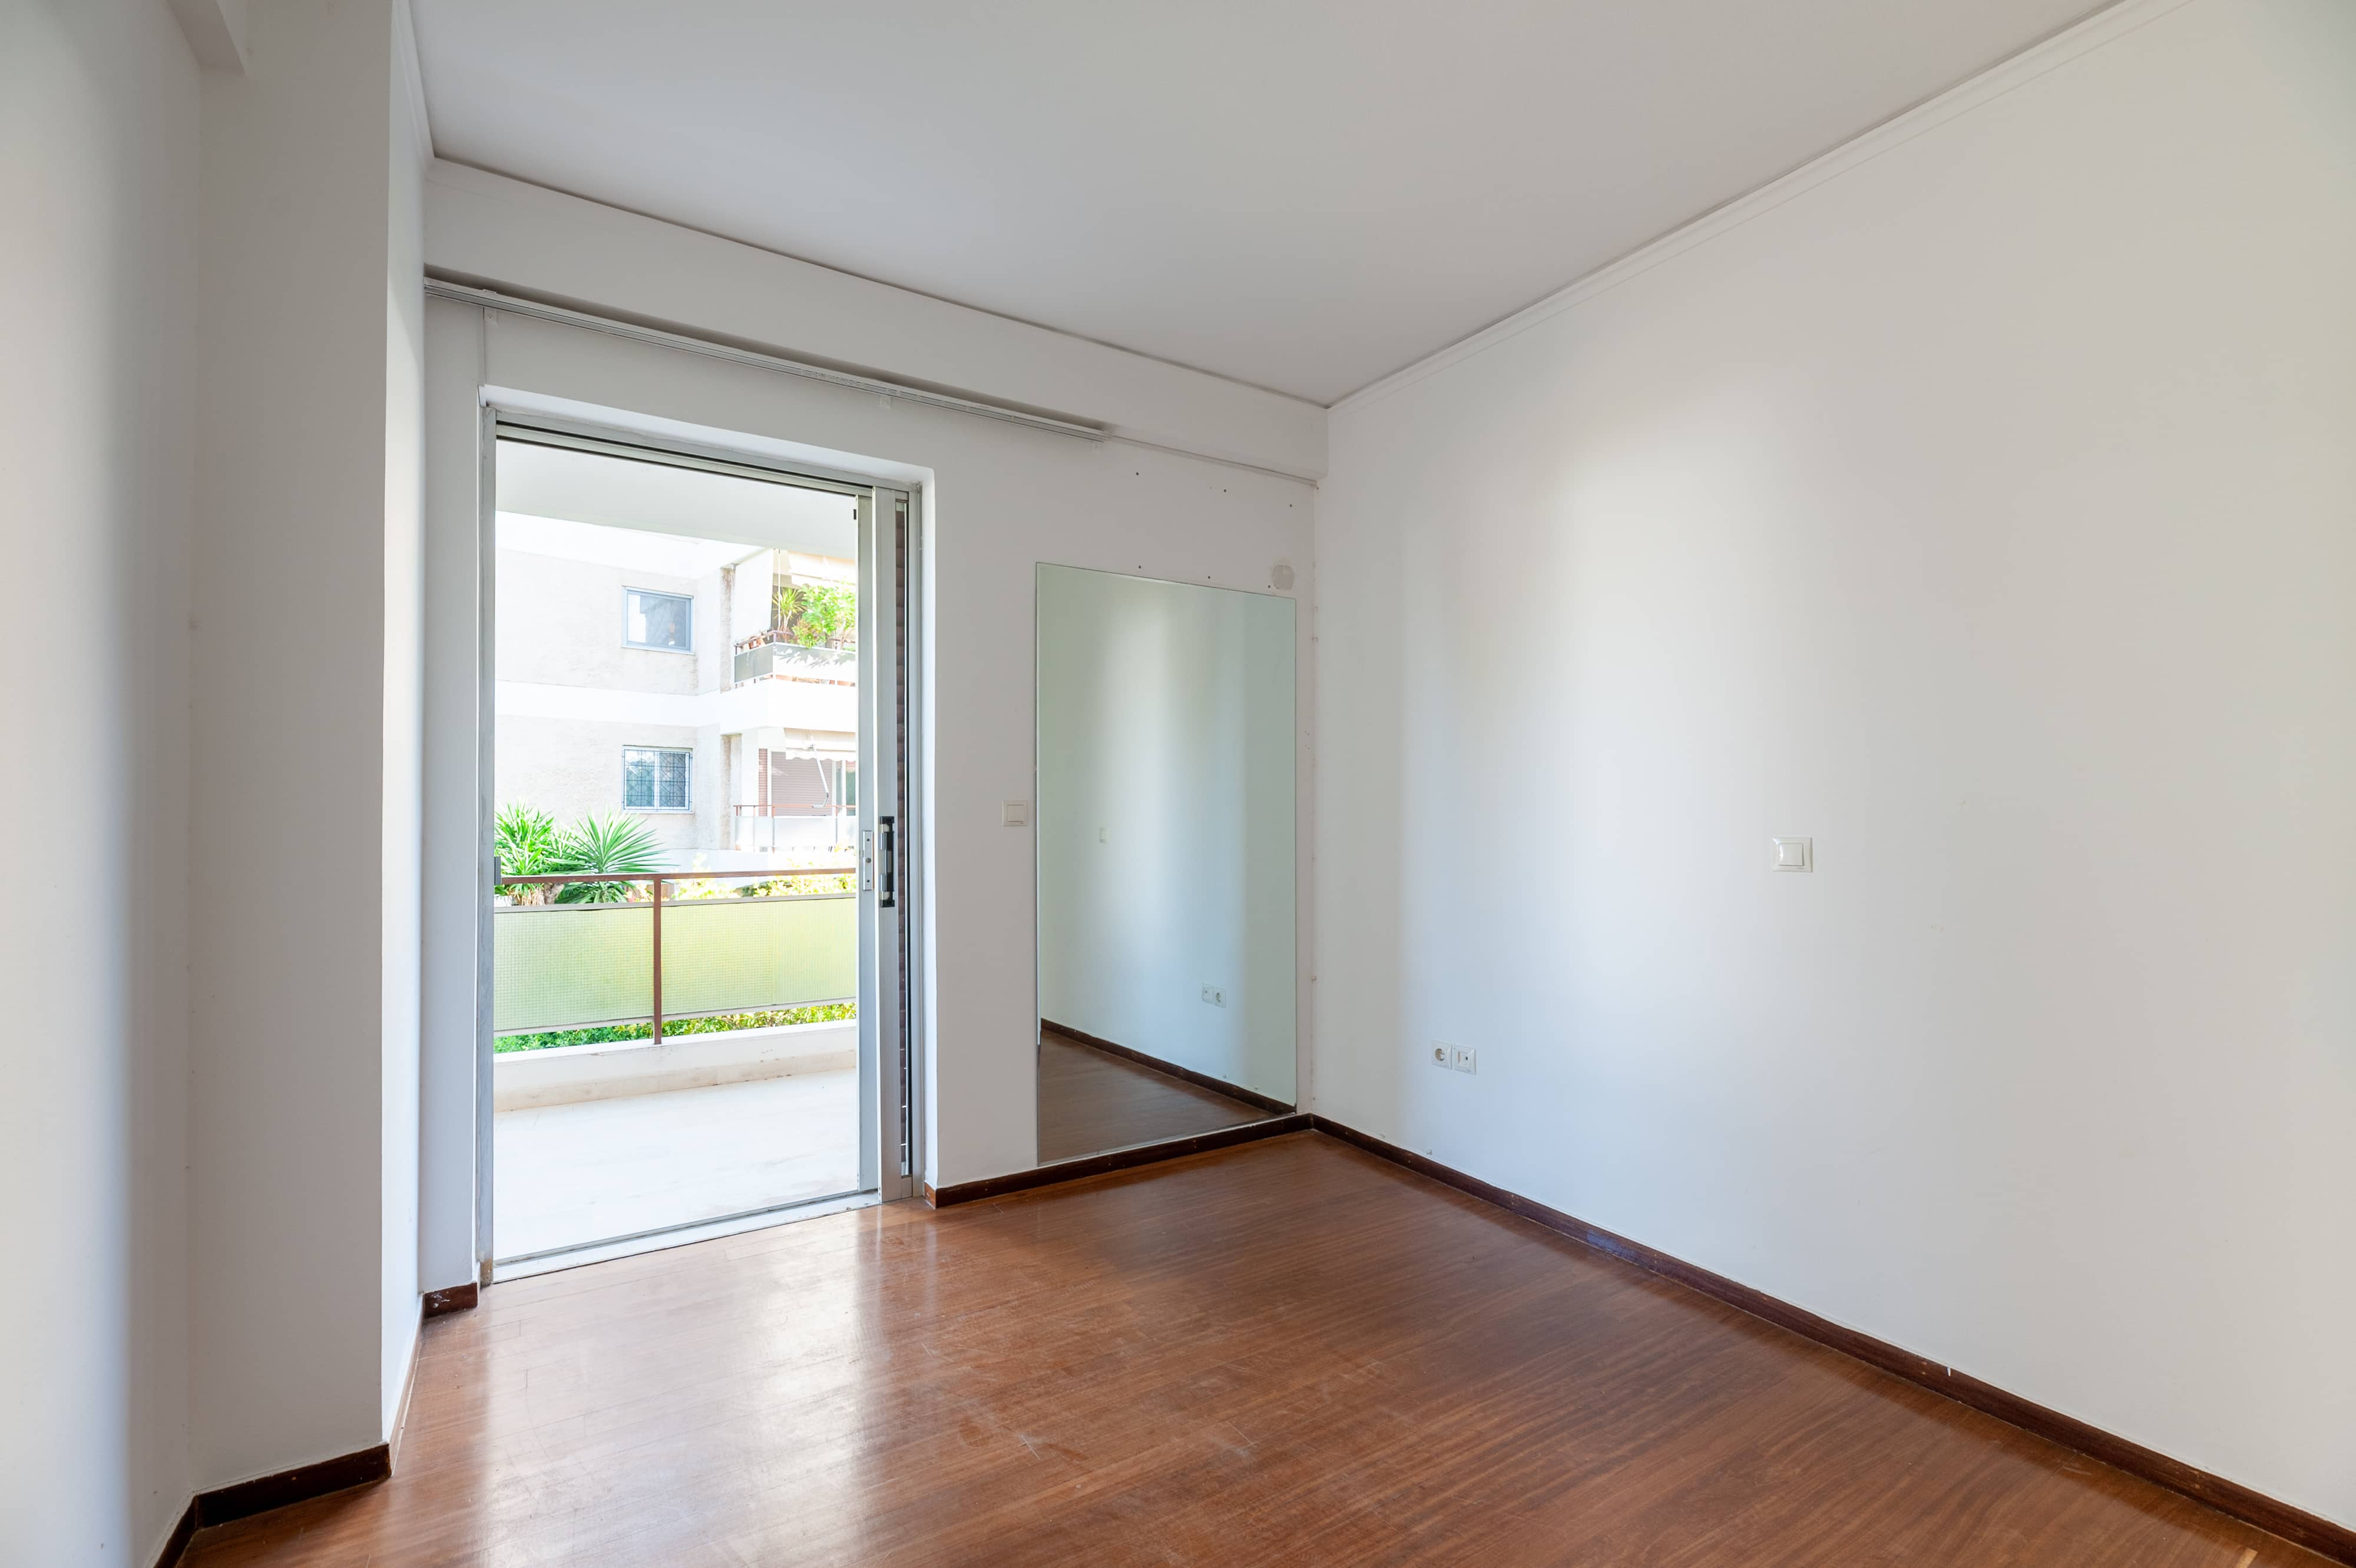 Υπνοδωμάτιο σε διαμέρισμα 123 τ.μ. στην Βούλα με ξύλινο πάτωμα και μπαλκονόπορτα